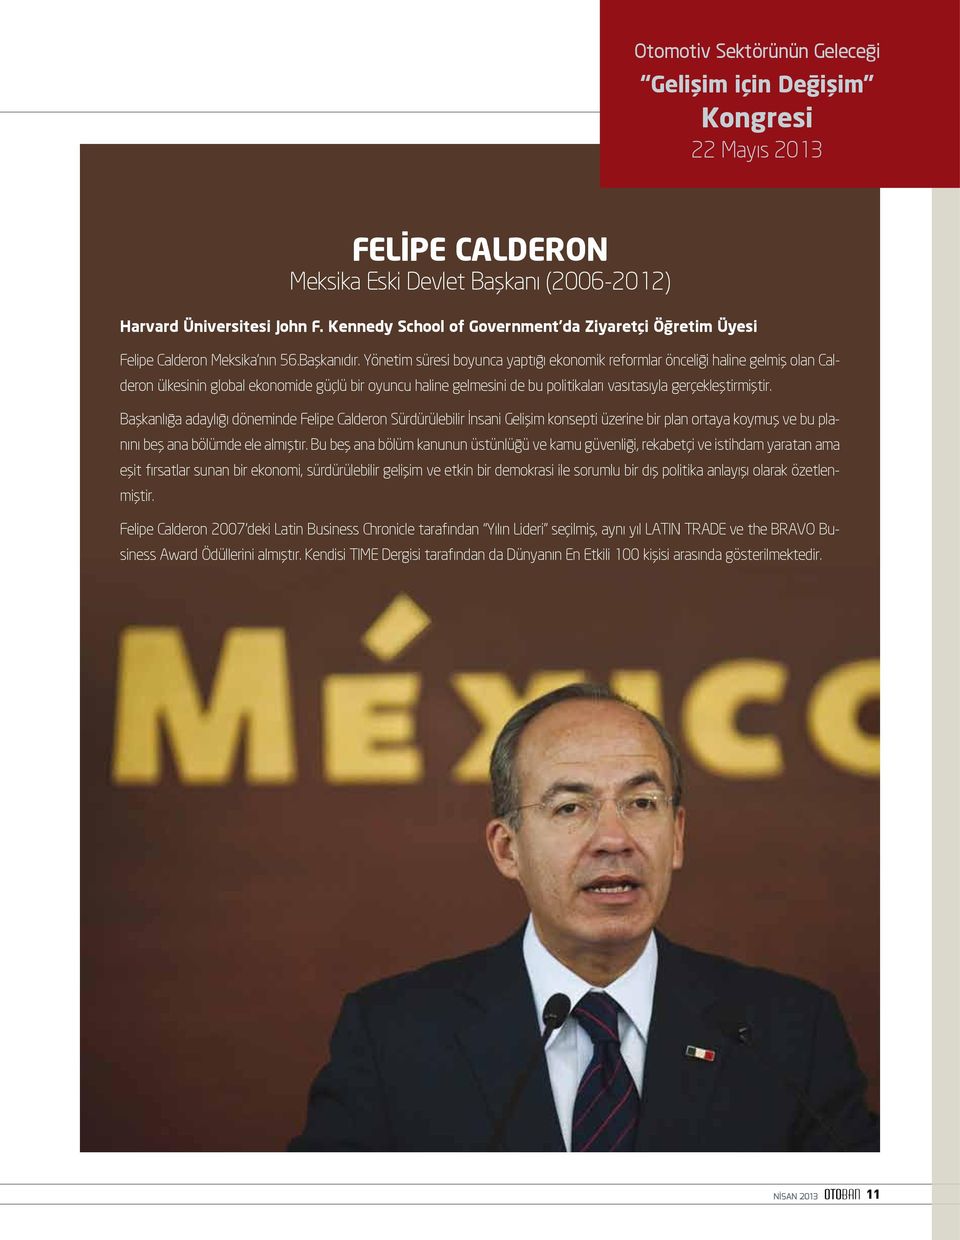 Yönetim süresi boyunca yaptığı ekonomik reformlar önceliği haline gelmiş olan Calderon ülkesinin global ekonomide güçlü bir oyuncu haline gelmesini de bu politikaları vasıtasıyla gerçekleştirmiştir.